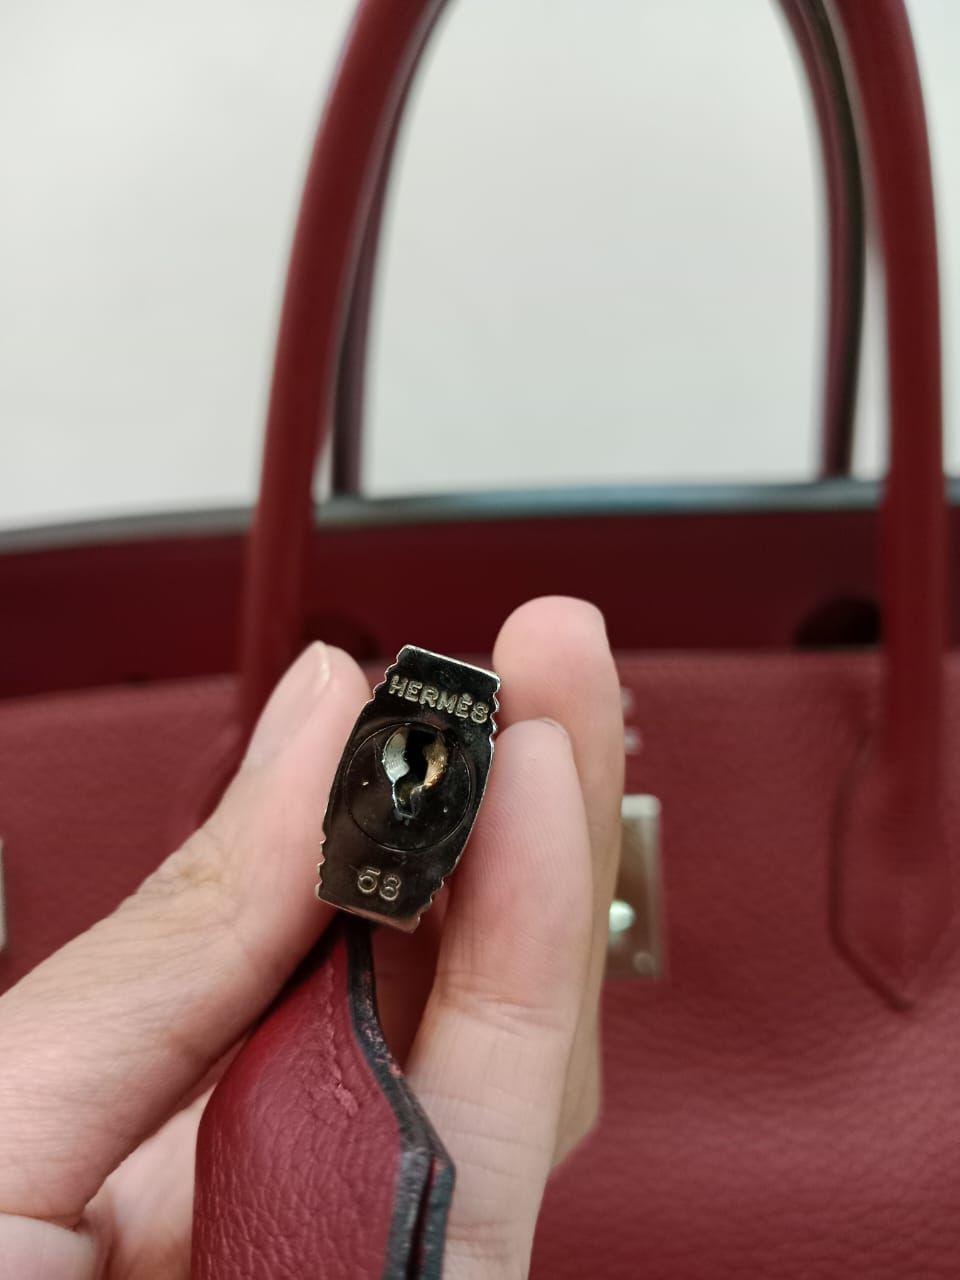 Magnifique Birkin 40 vintage en rubis avec quincaillerie en palladium. L'ensemble est en très bon état, avec un léger ternissement de la quincaillerie. Légers plis et éraflures sur le corps en cuir. Stamp Square H (2004). Il est livré avec son sac à